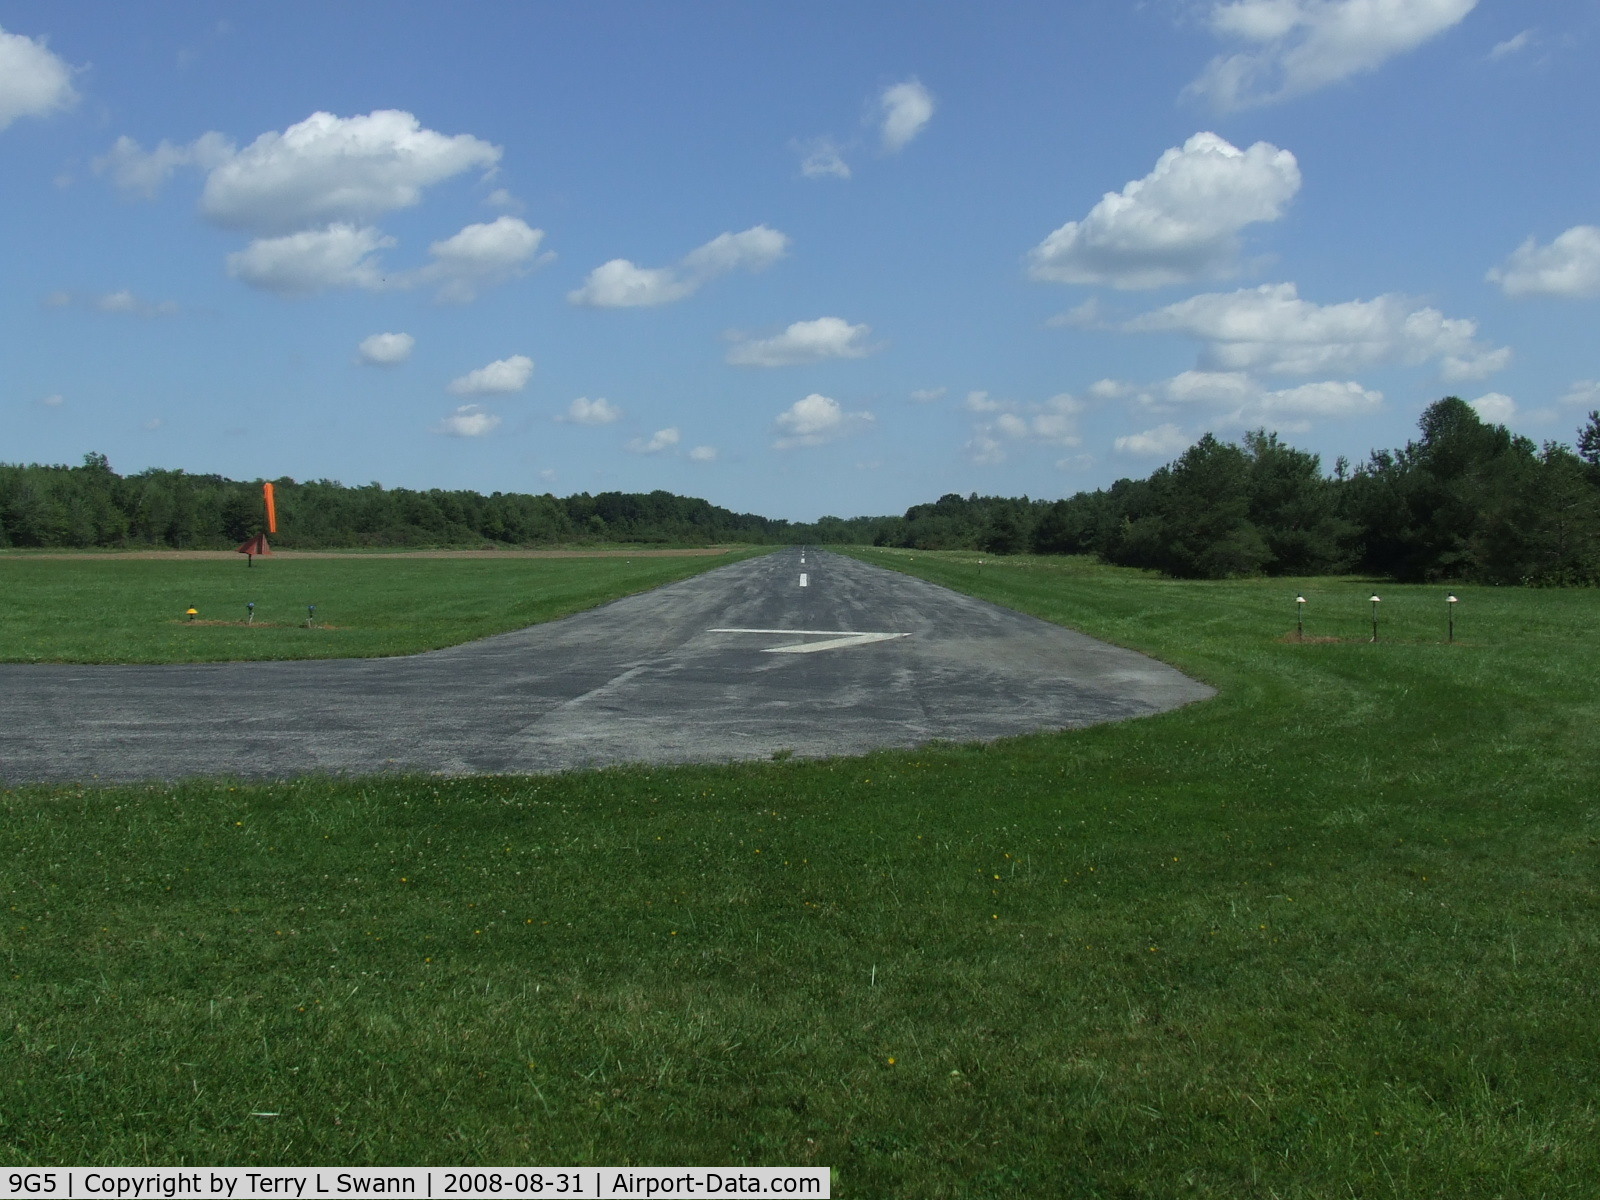 Royalton Airport (9G5) - Looking down runway 7 at Royalton.